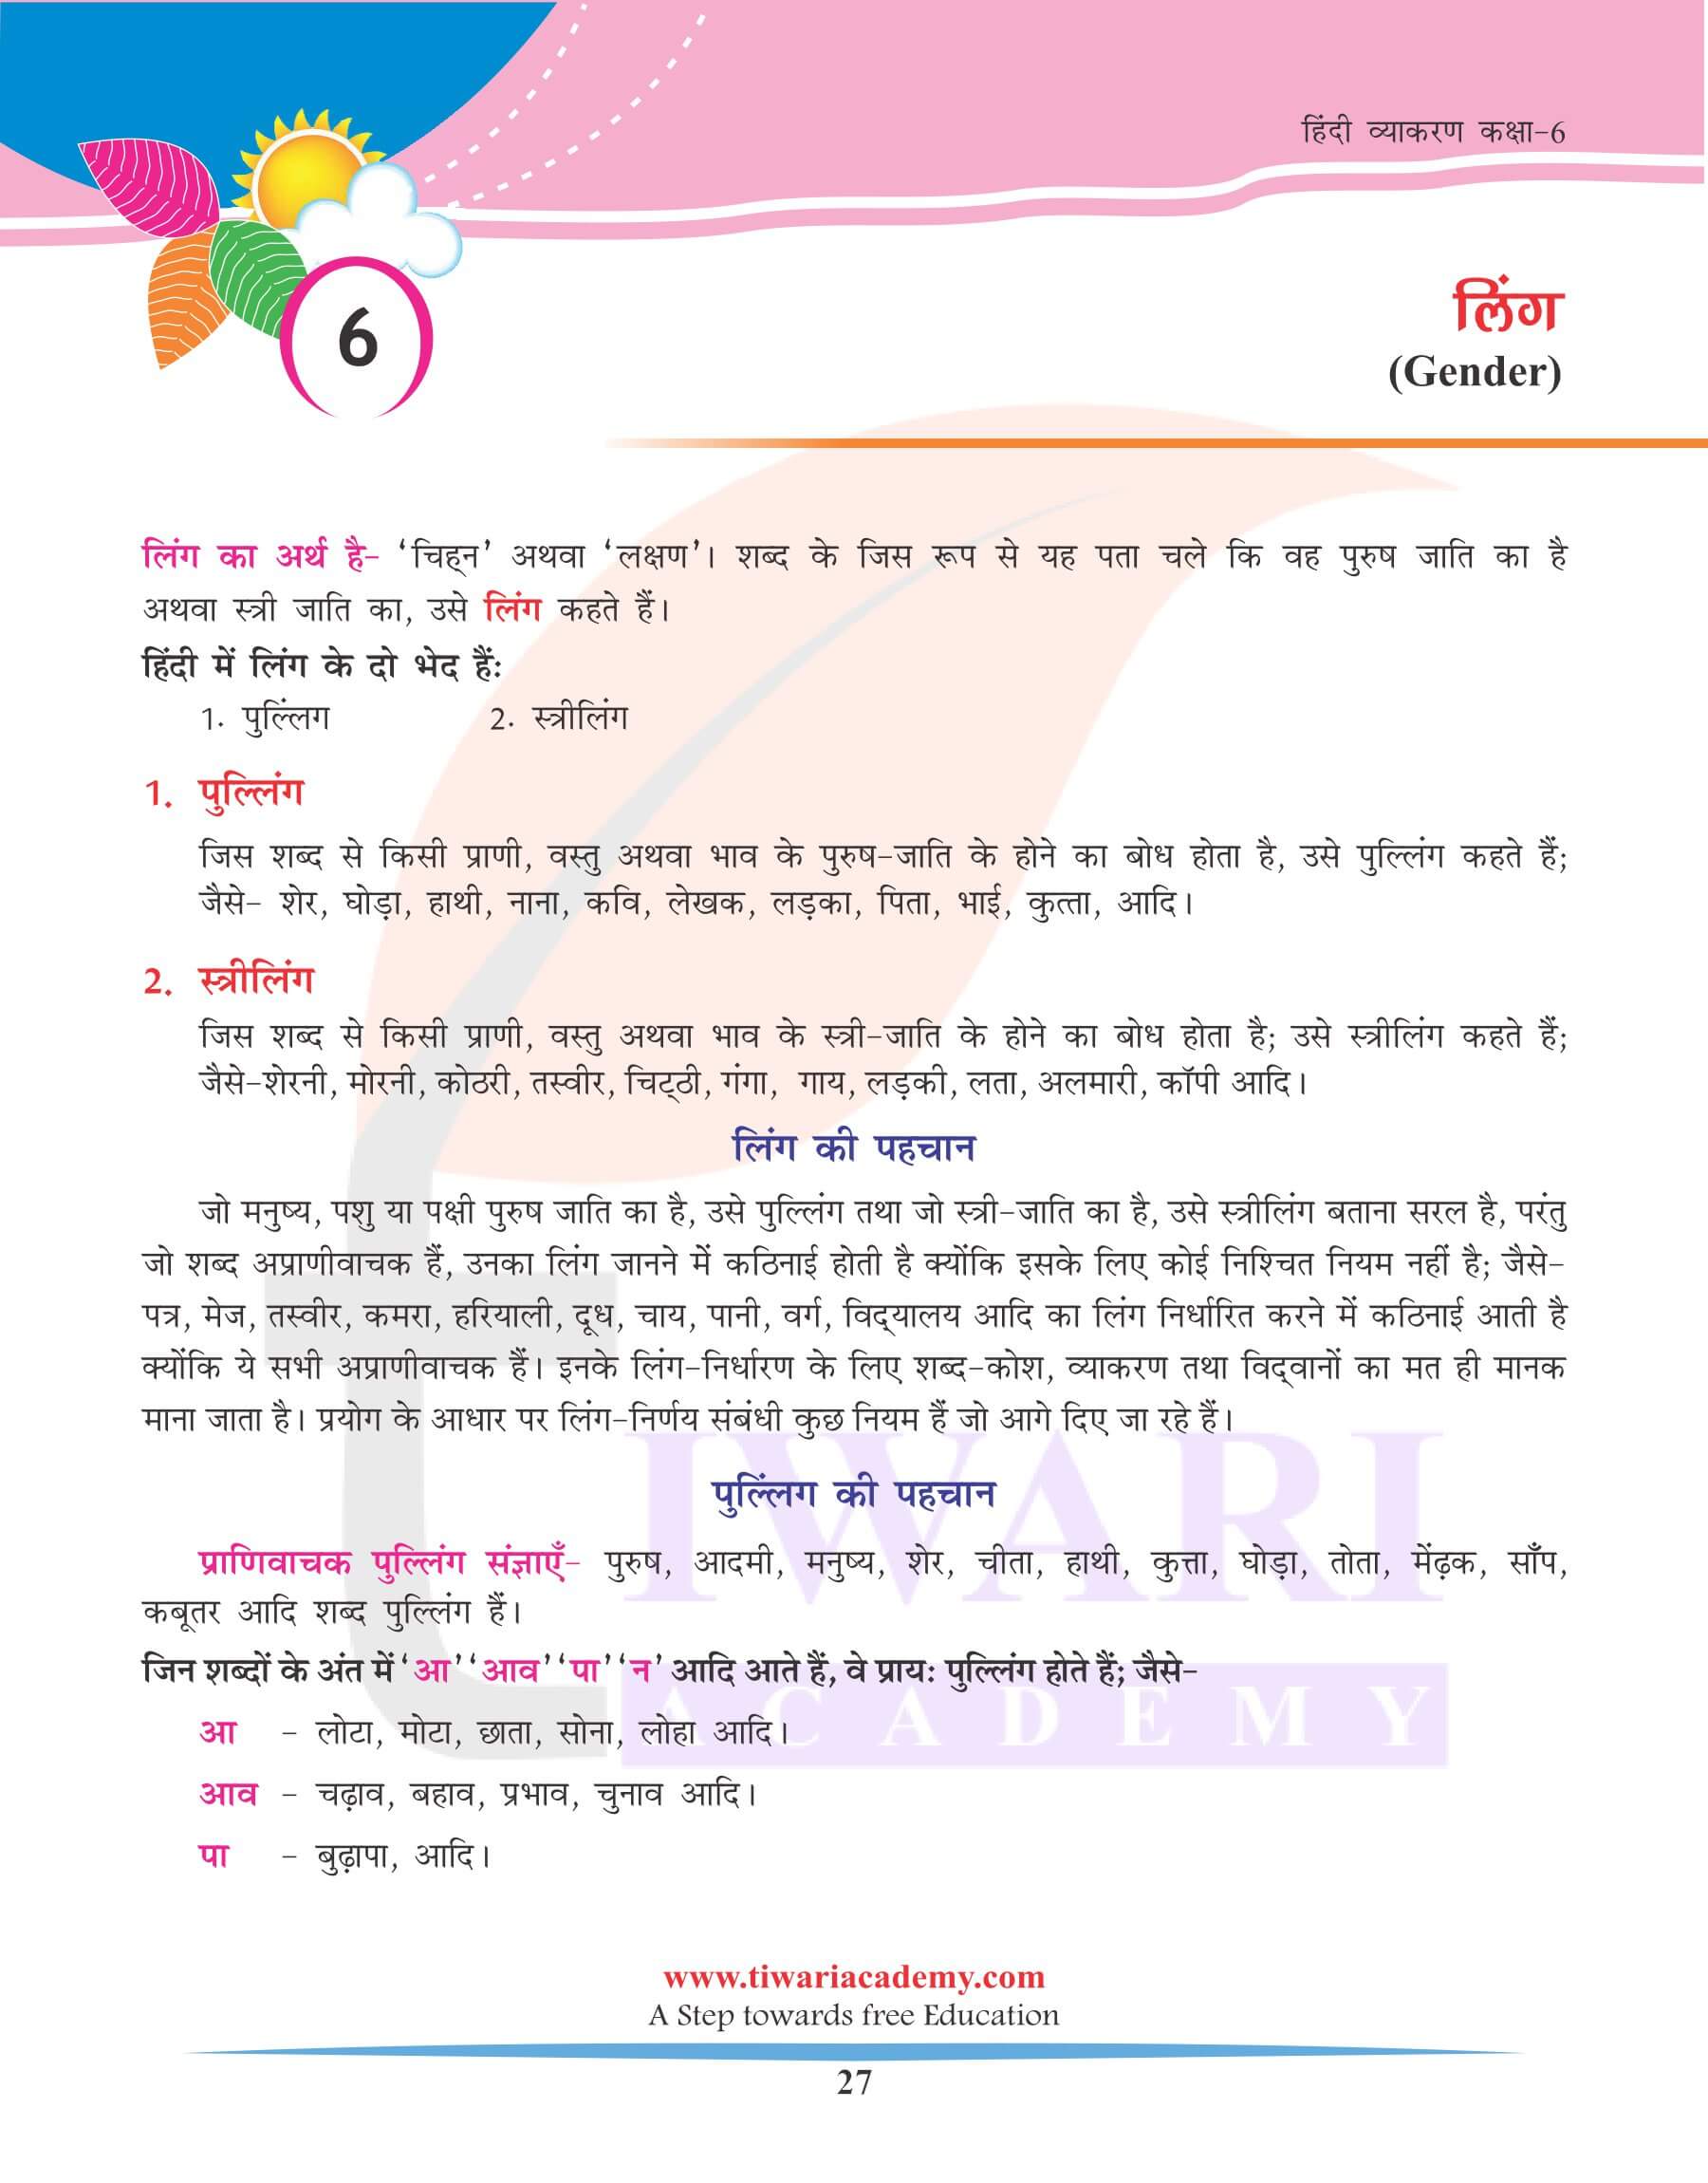 कक्षा 6 हिंदी व्याकरण लिंग तथा उसके भेद